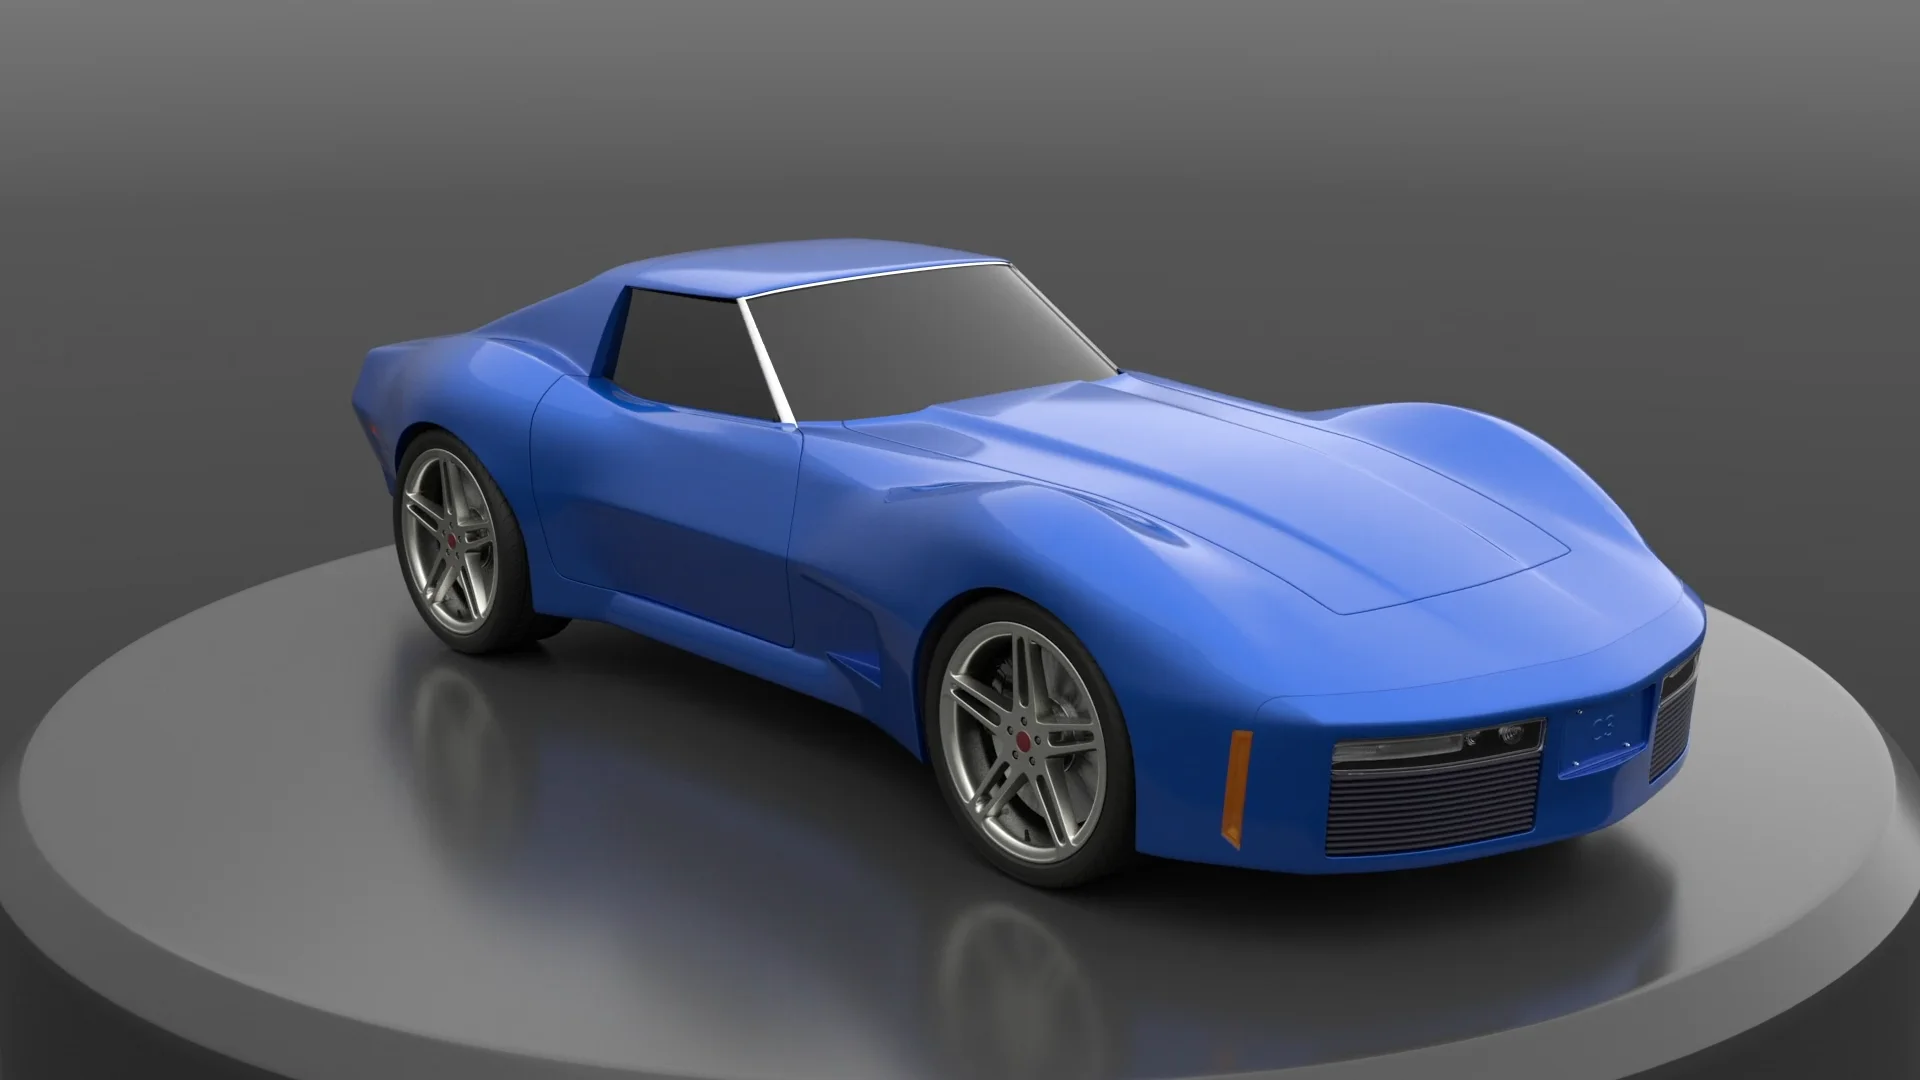 Custom C3 Corvette - Turntable on Vimeo